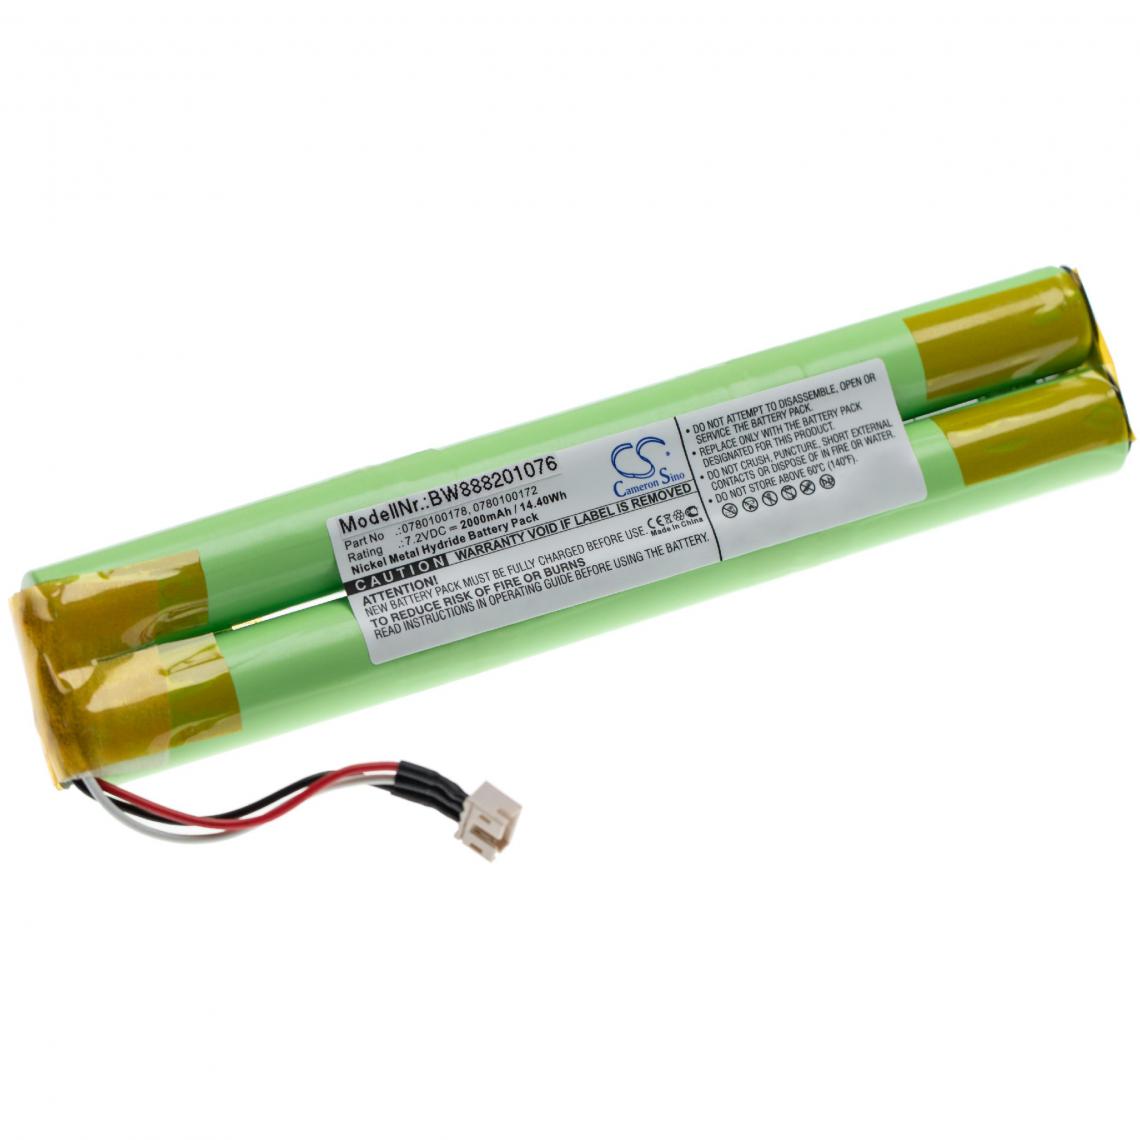 Vhbw - vhbw batterie remplace Paradox Magellan 0780100172, 0780100178 pour alarme maison/contrôle home security (2000mAh, 7.2V, NiMH) - Autre appareil de mesure